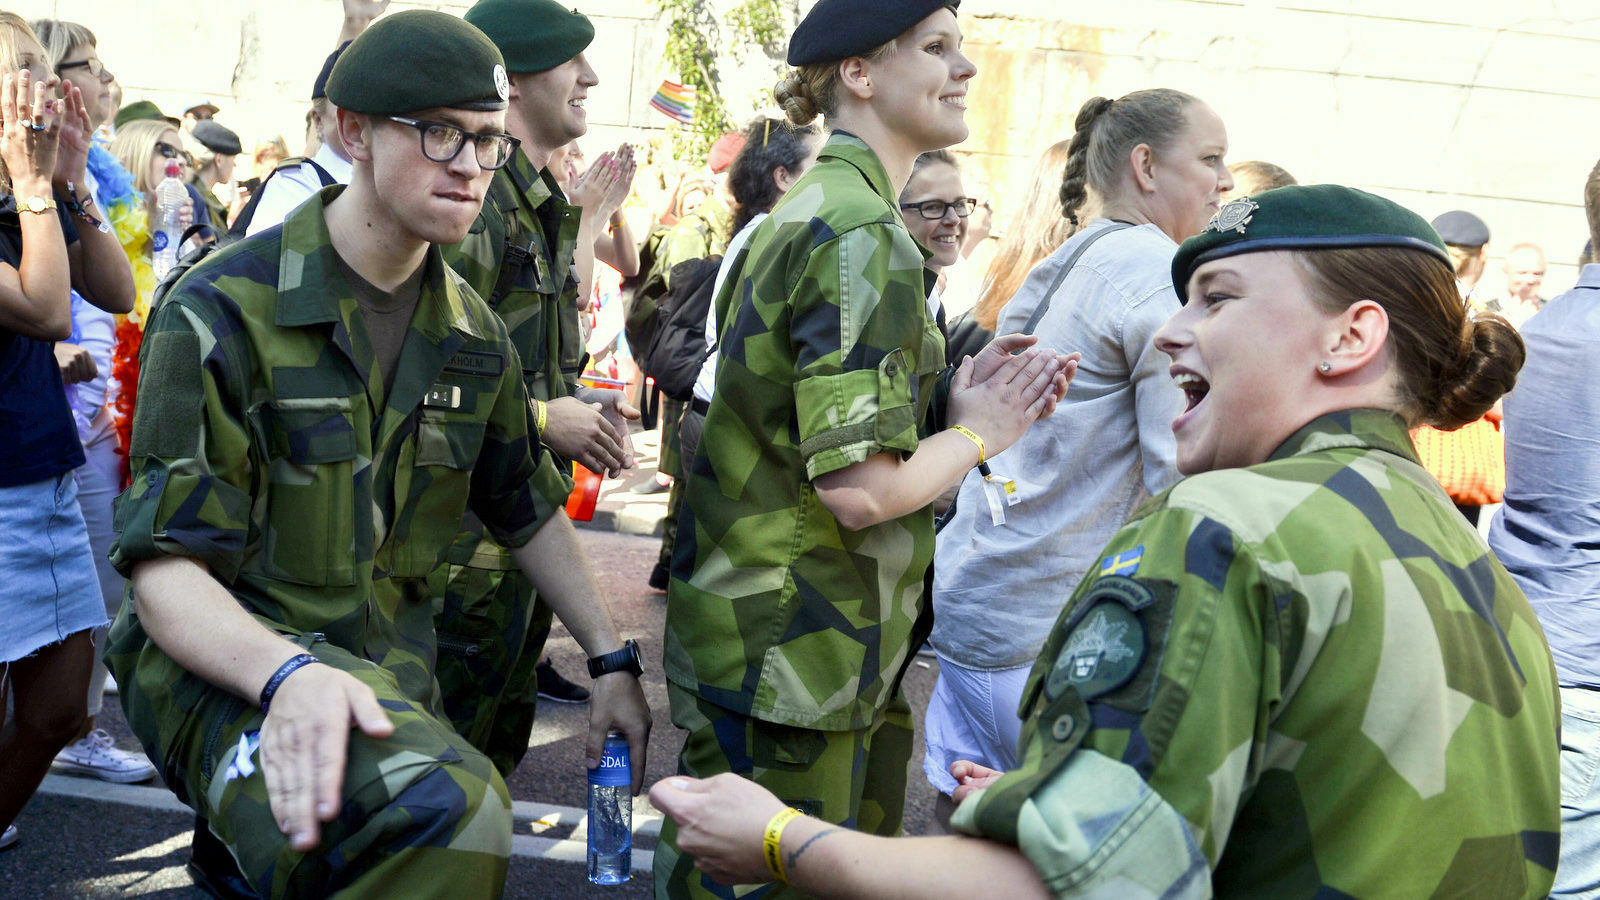 Шведские офицеры займутся обучением украинских новобранцев для ВСУ